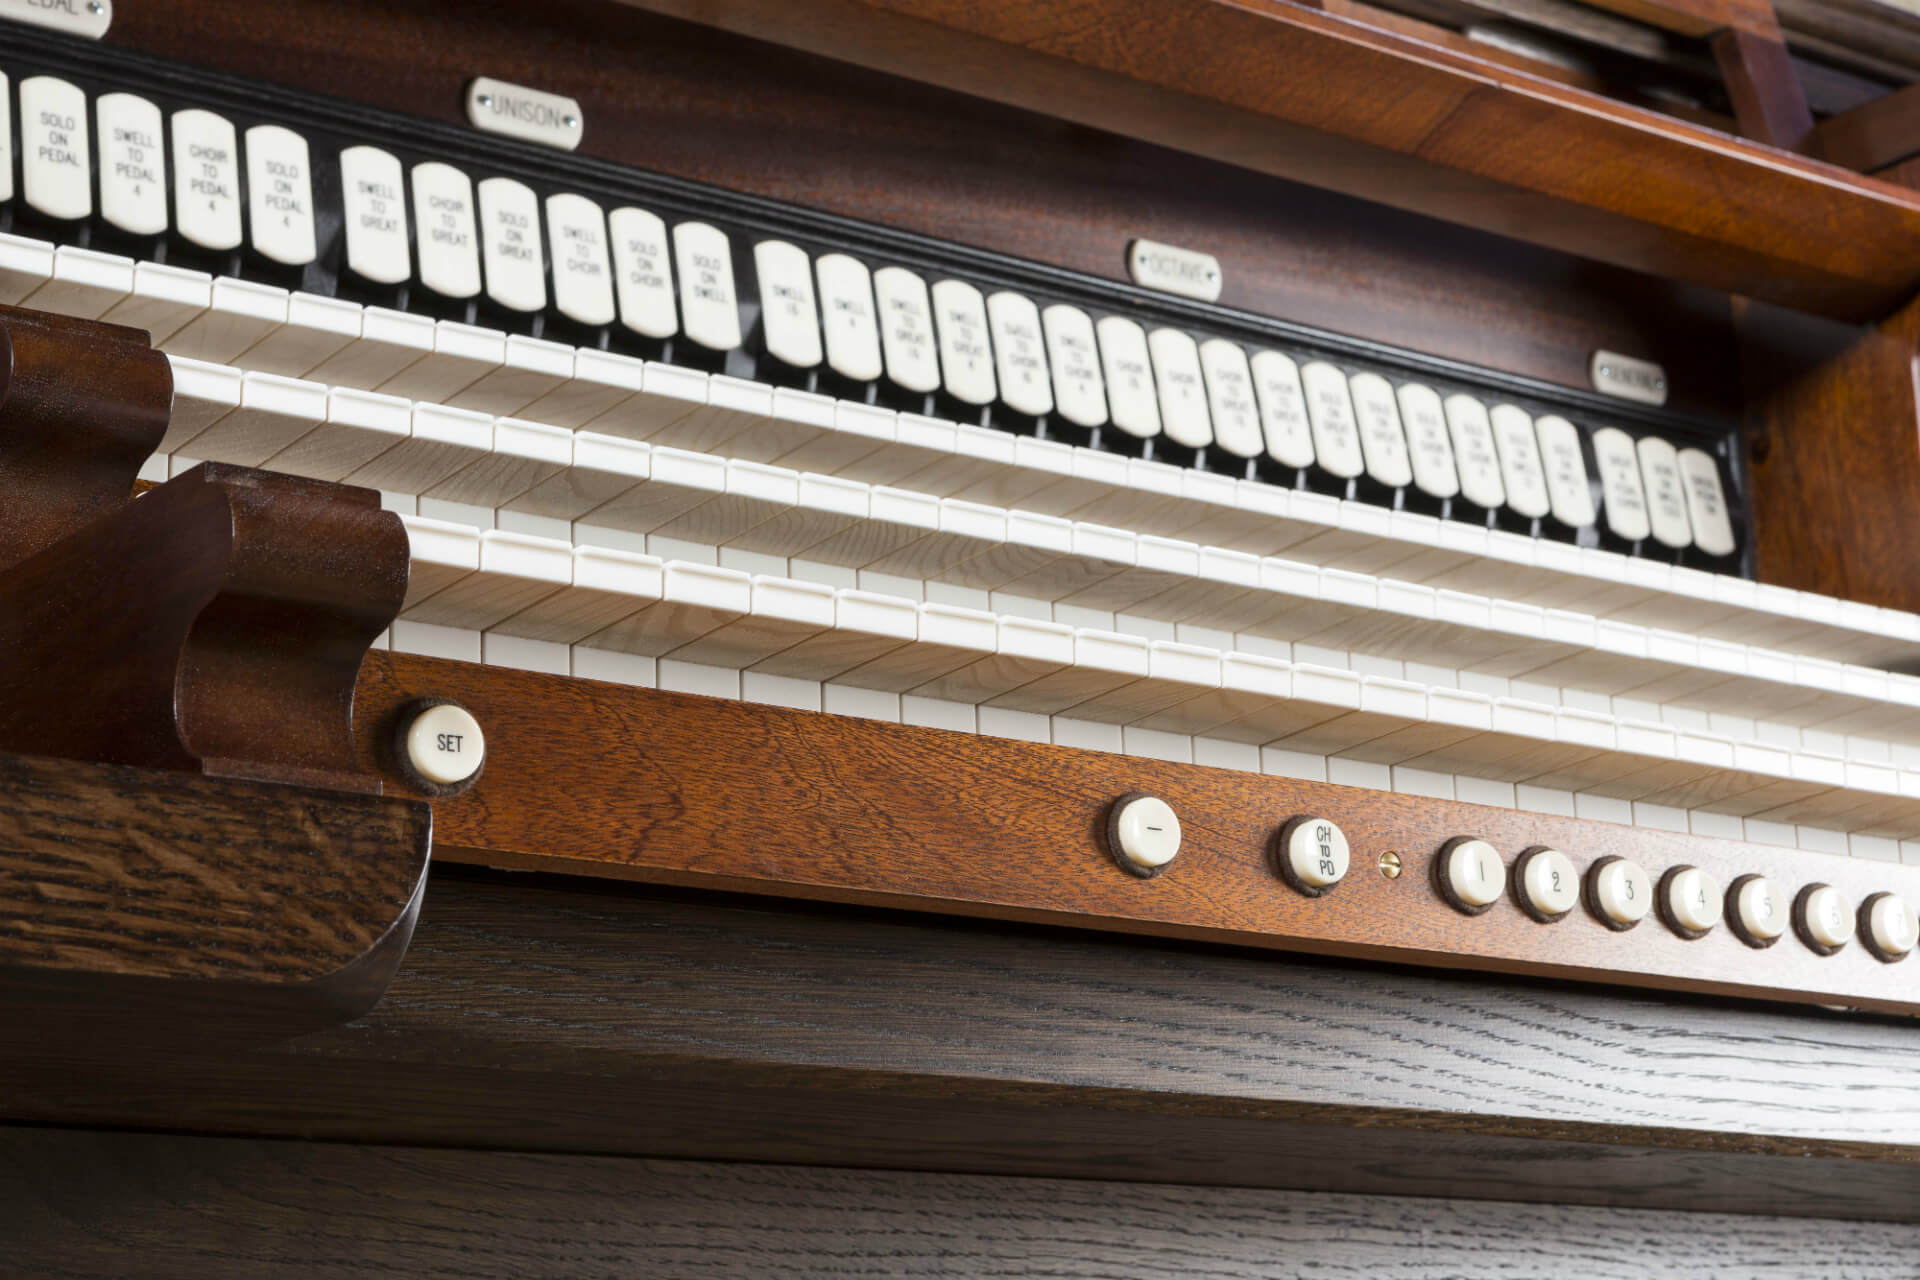 Skinner Style Organ – keys from below